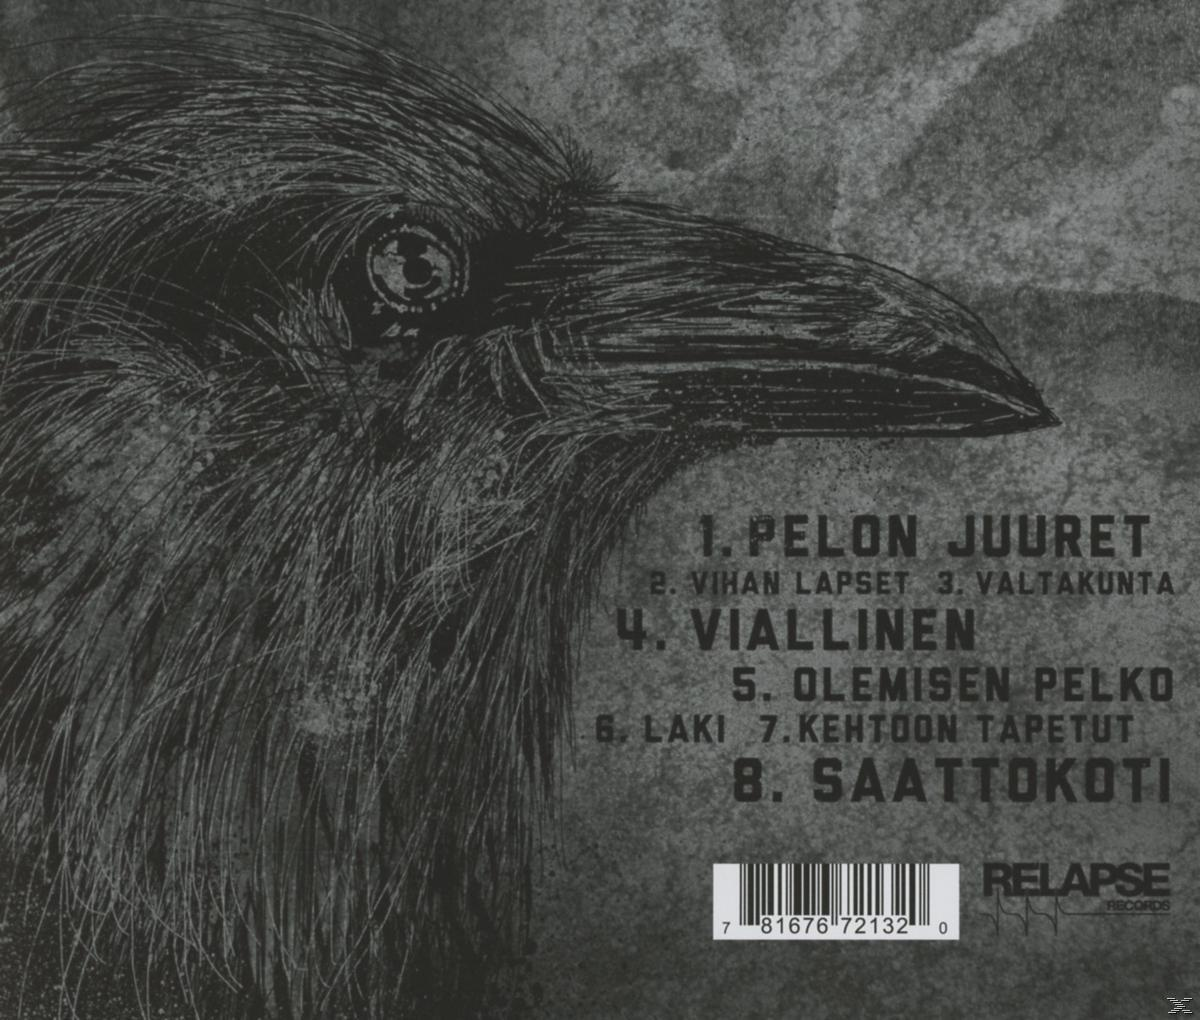 (CD) Unkind Juuret - Pelon -